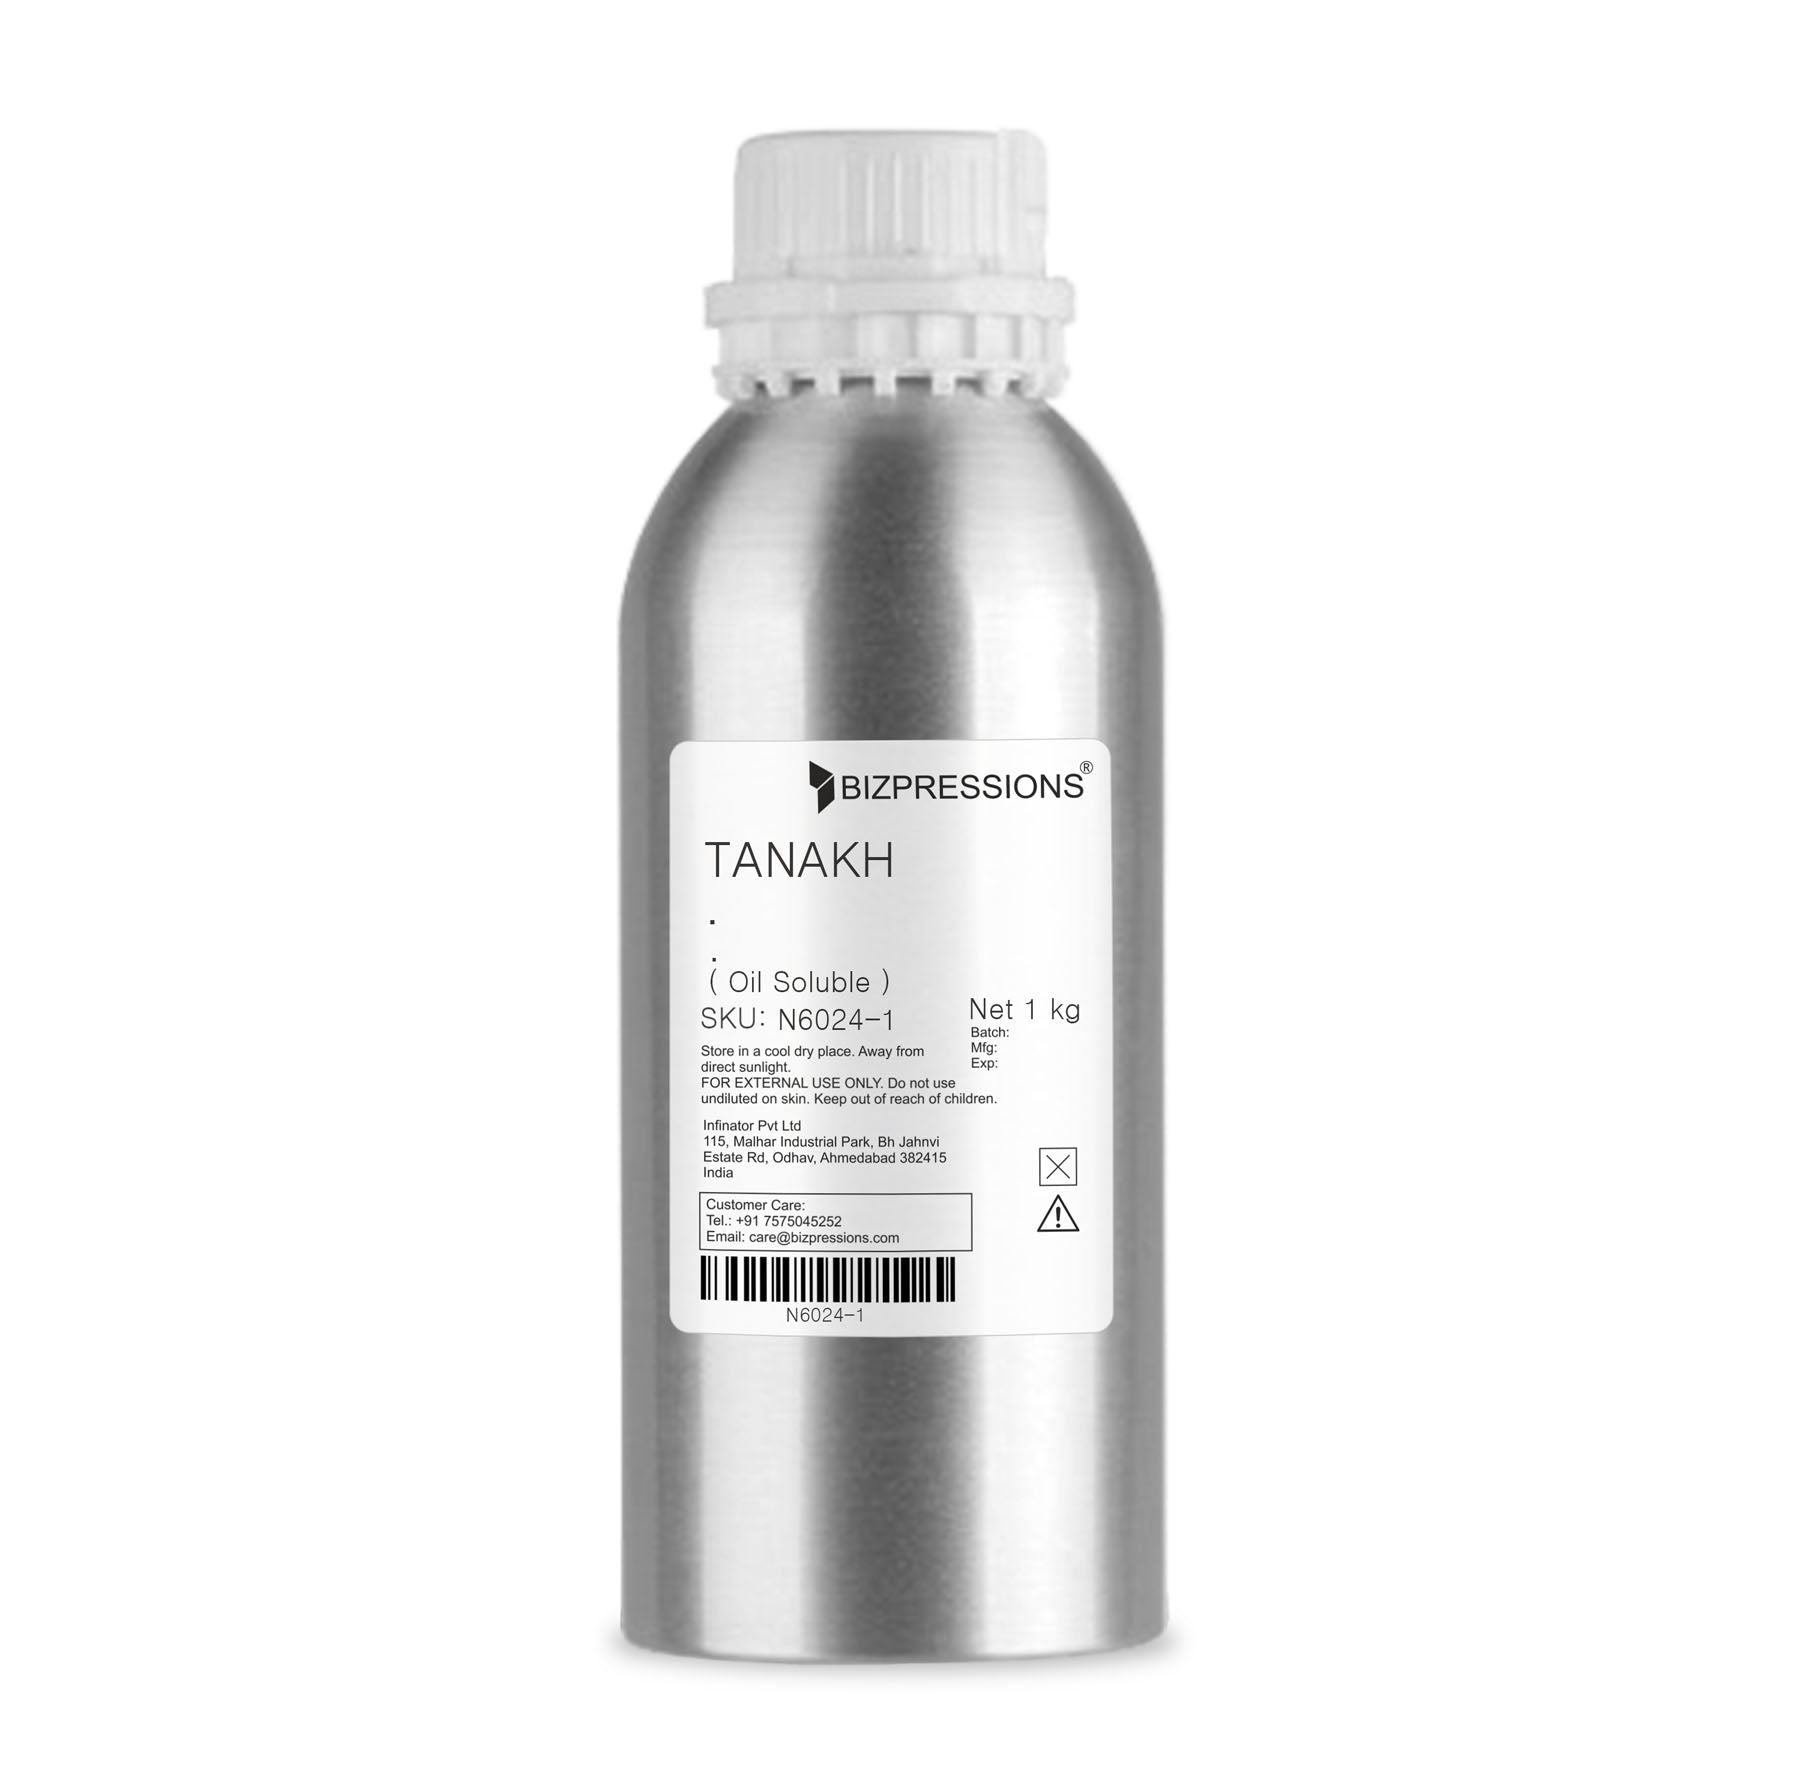 TANAKH - Fragrance ( Oil Soluble ) - 1 kg